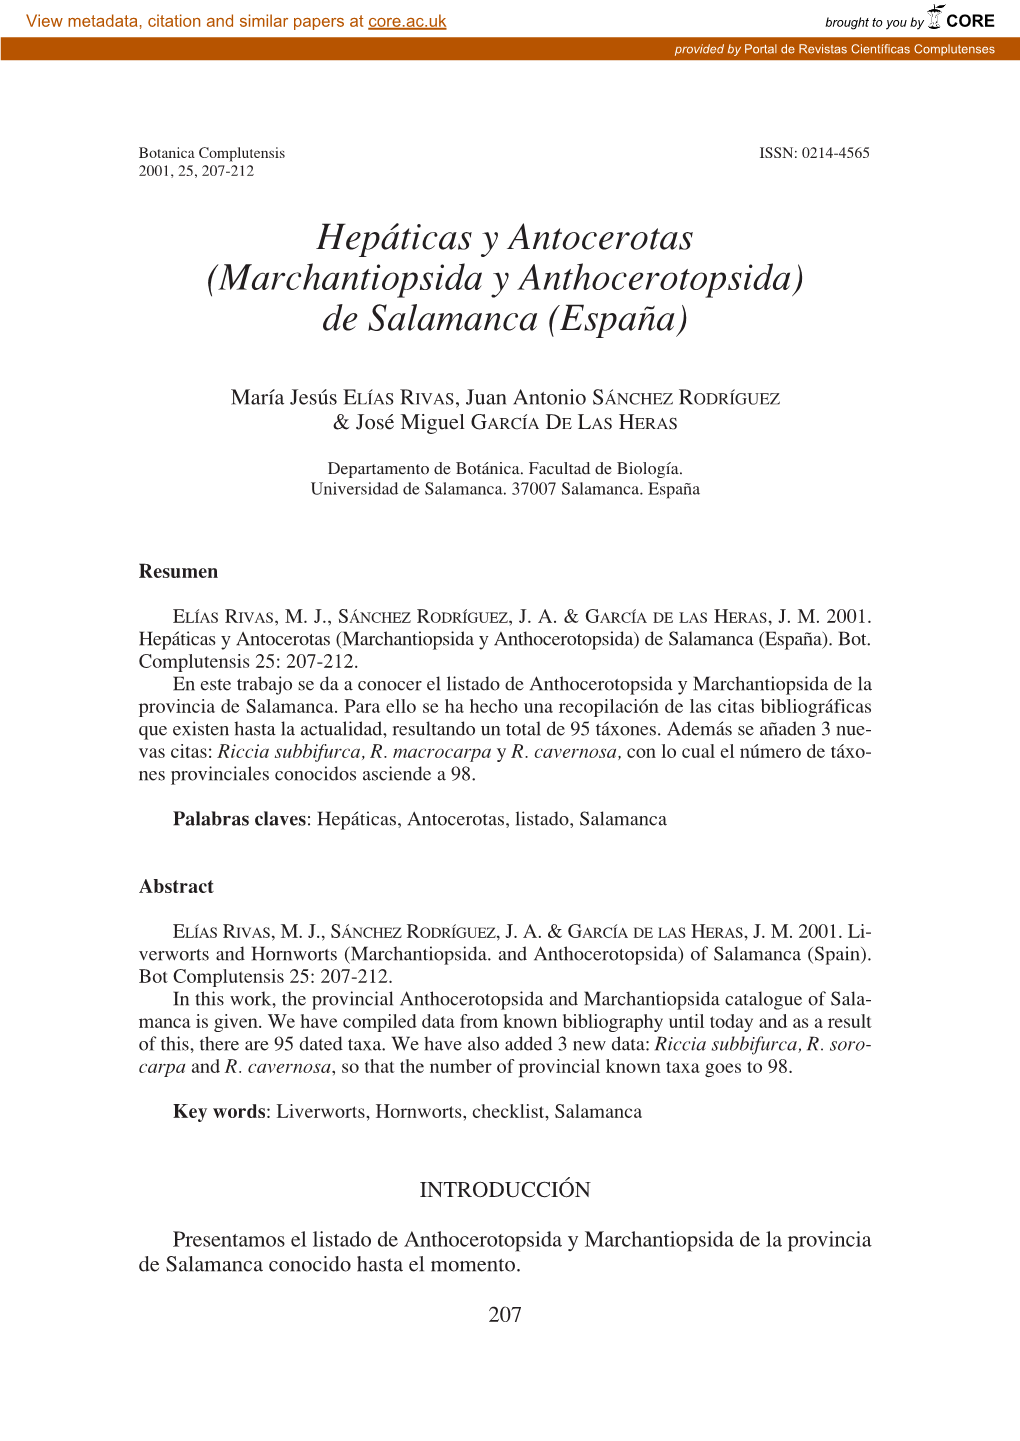 Hepáticas Y Antocerotas (Marchantiopsida Y Anthocerotopsida) De Salamanca (España)